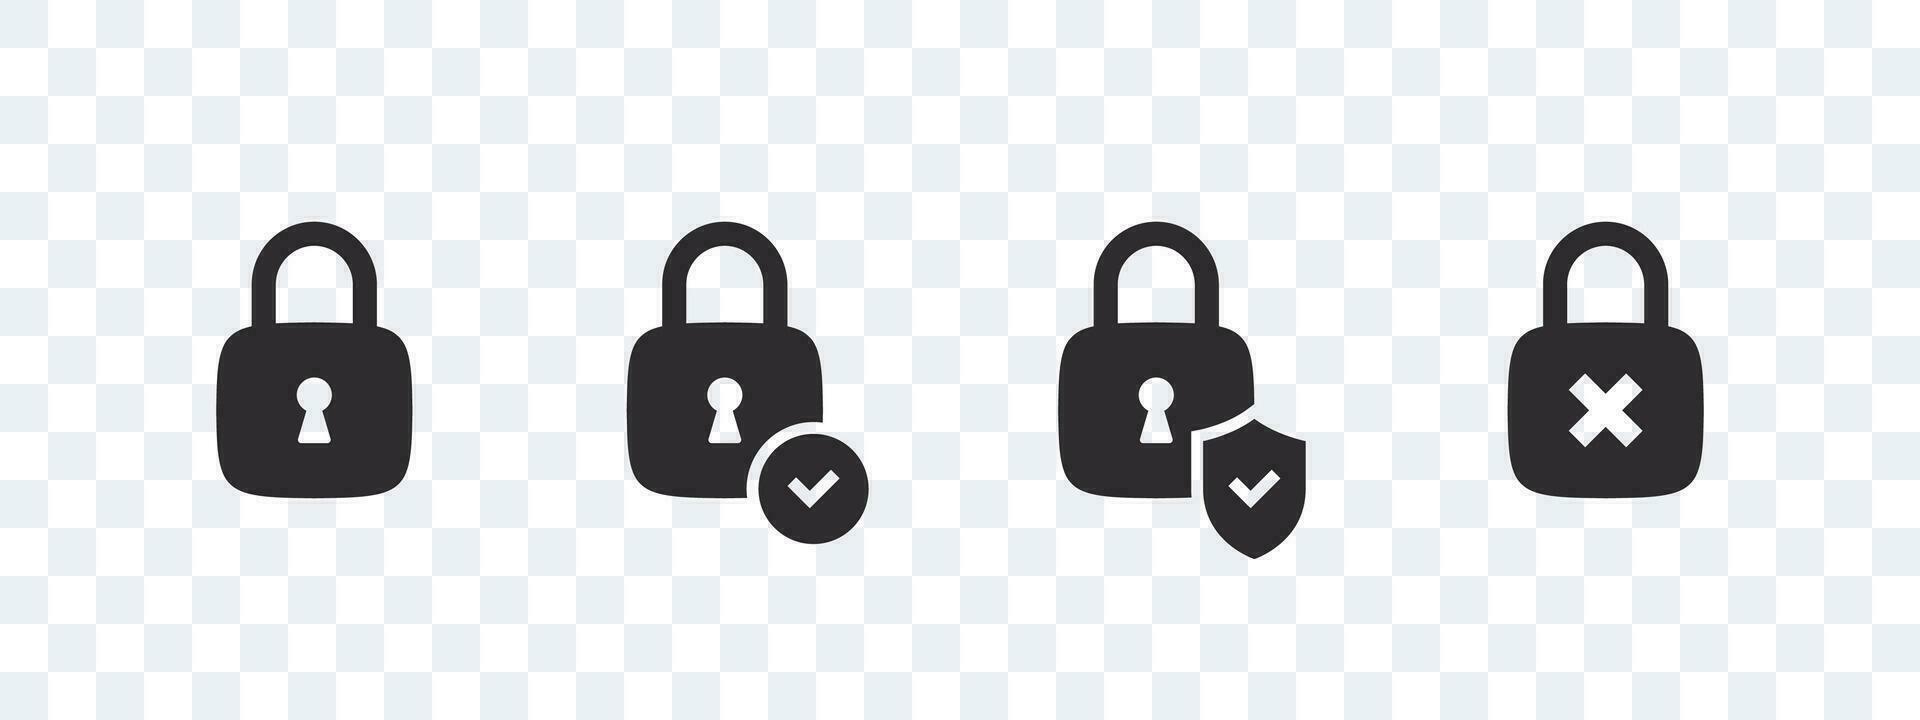 sicurezza serratura icone. lucchetti icone. sicurezza simbolo distintivi. vettore scalabile grafica